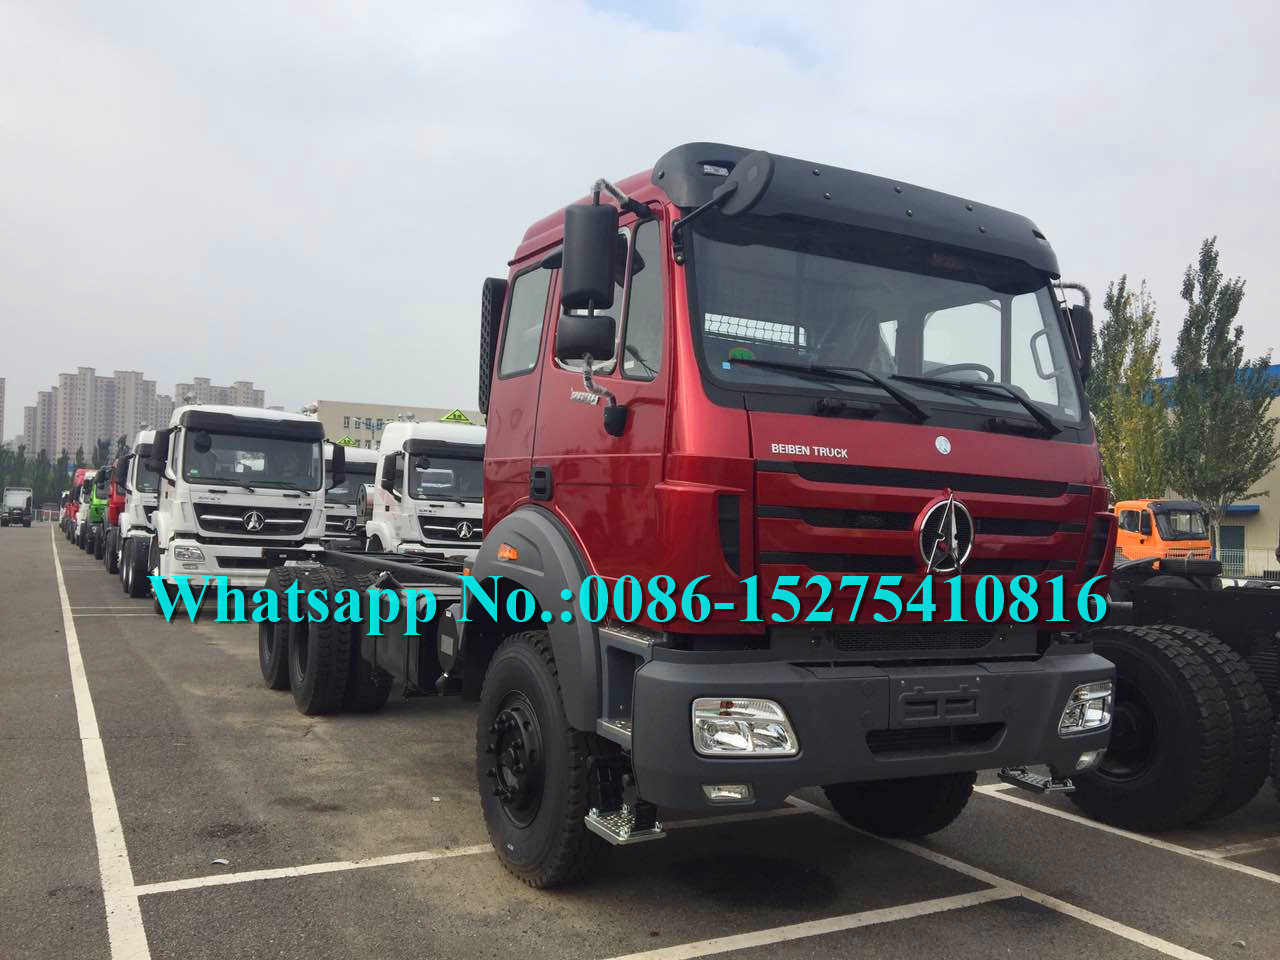 Penggunaan Militer Merah 6x6 Truk Kargo / Off Road Cargo Truck Mengadopsi Teknologi Benz